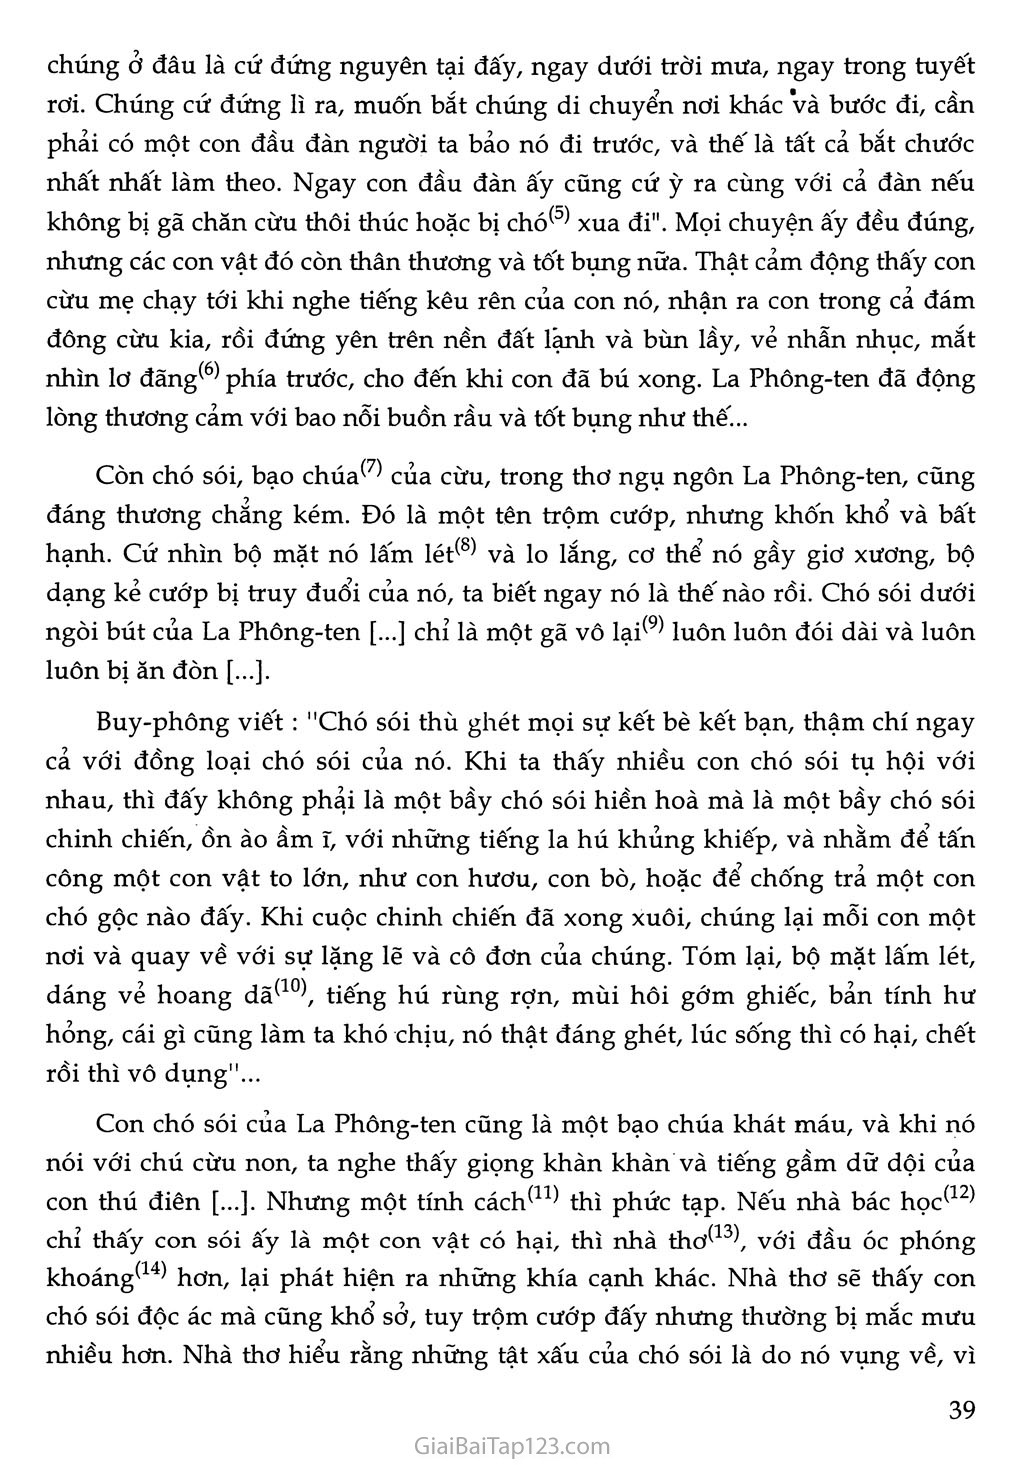 Chó sói và cừu trong thơ ngụ ngôn của La Phông-ten (trích) trang 3